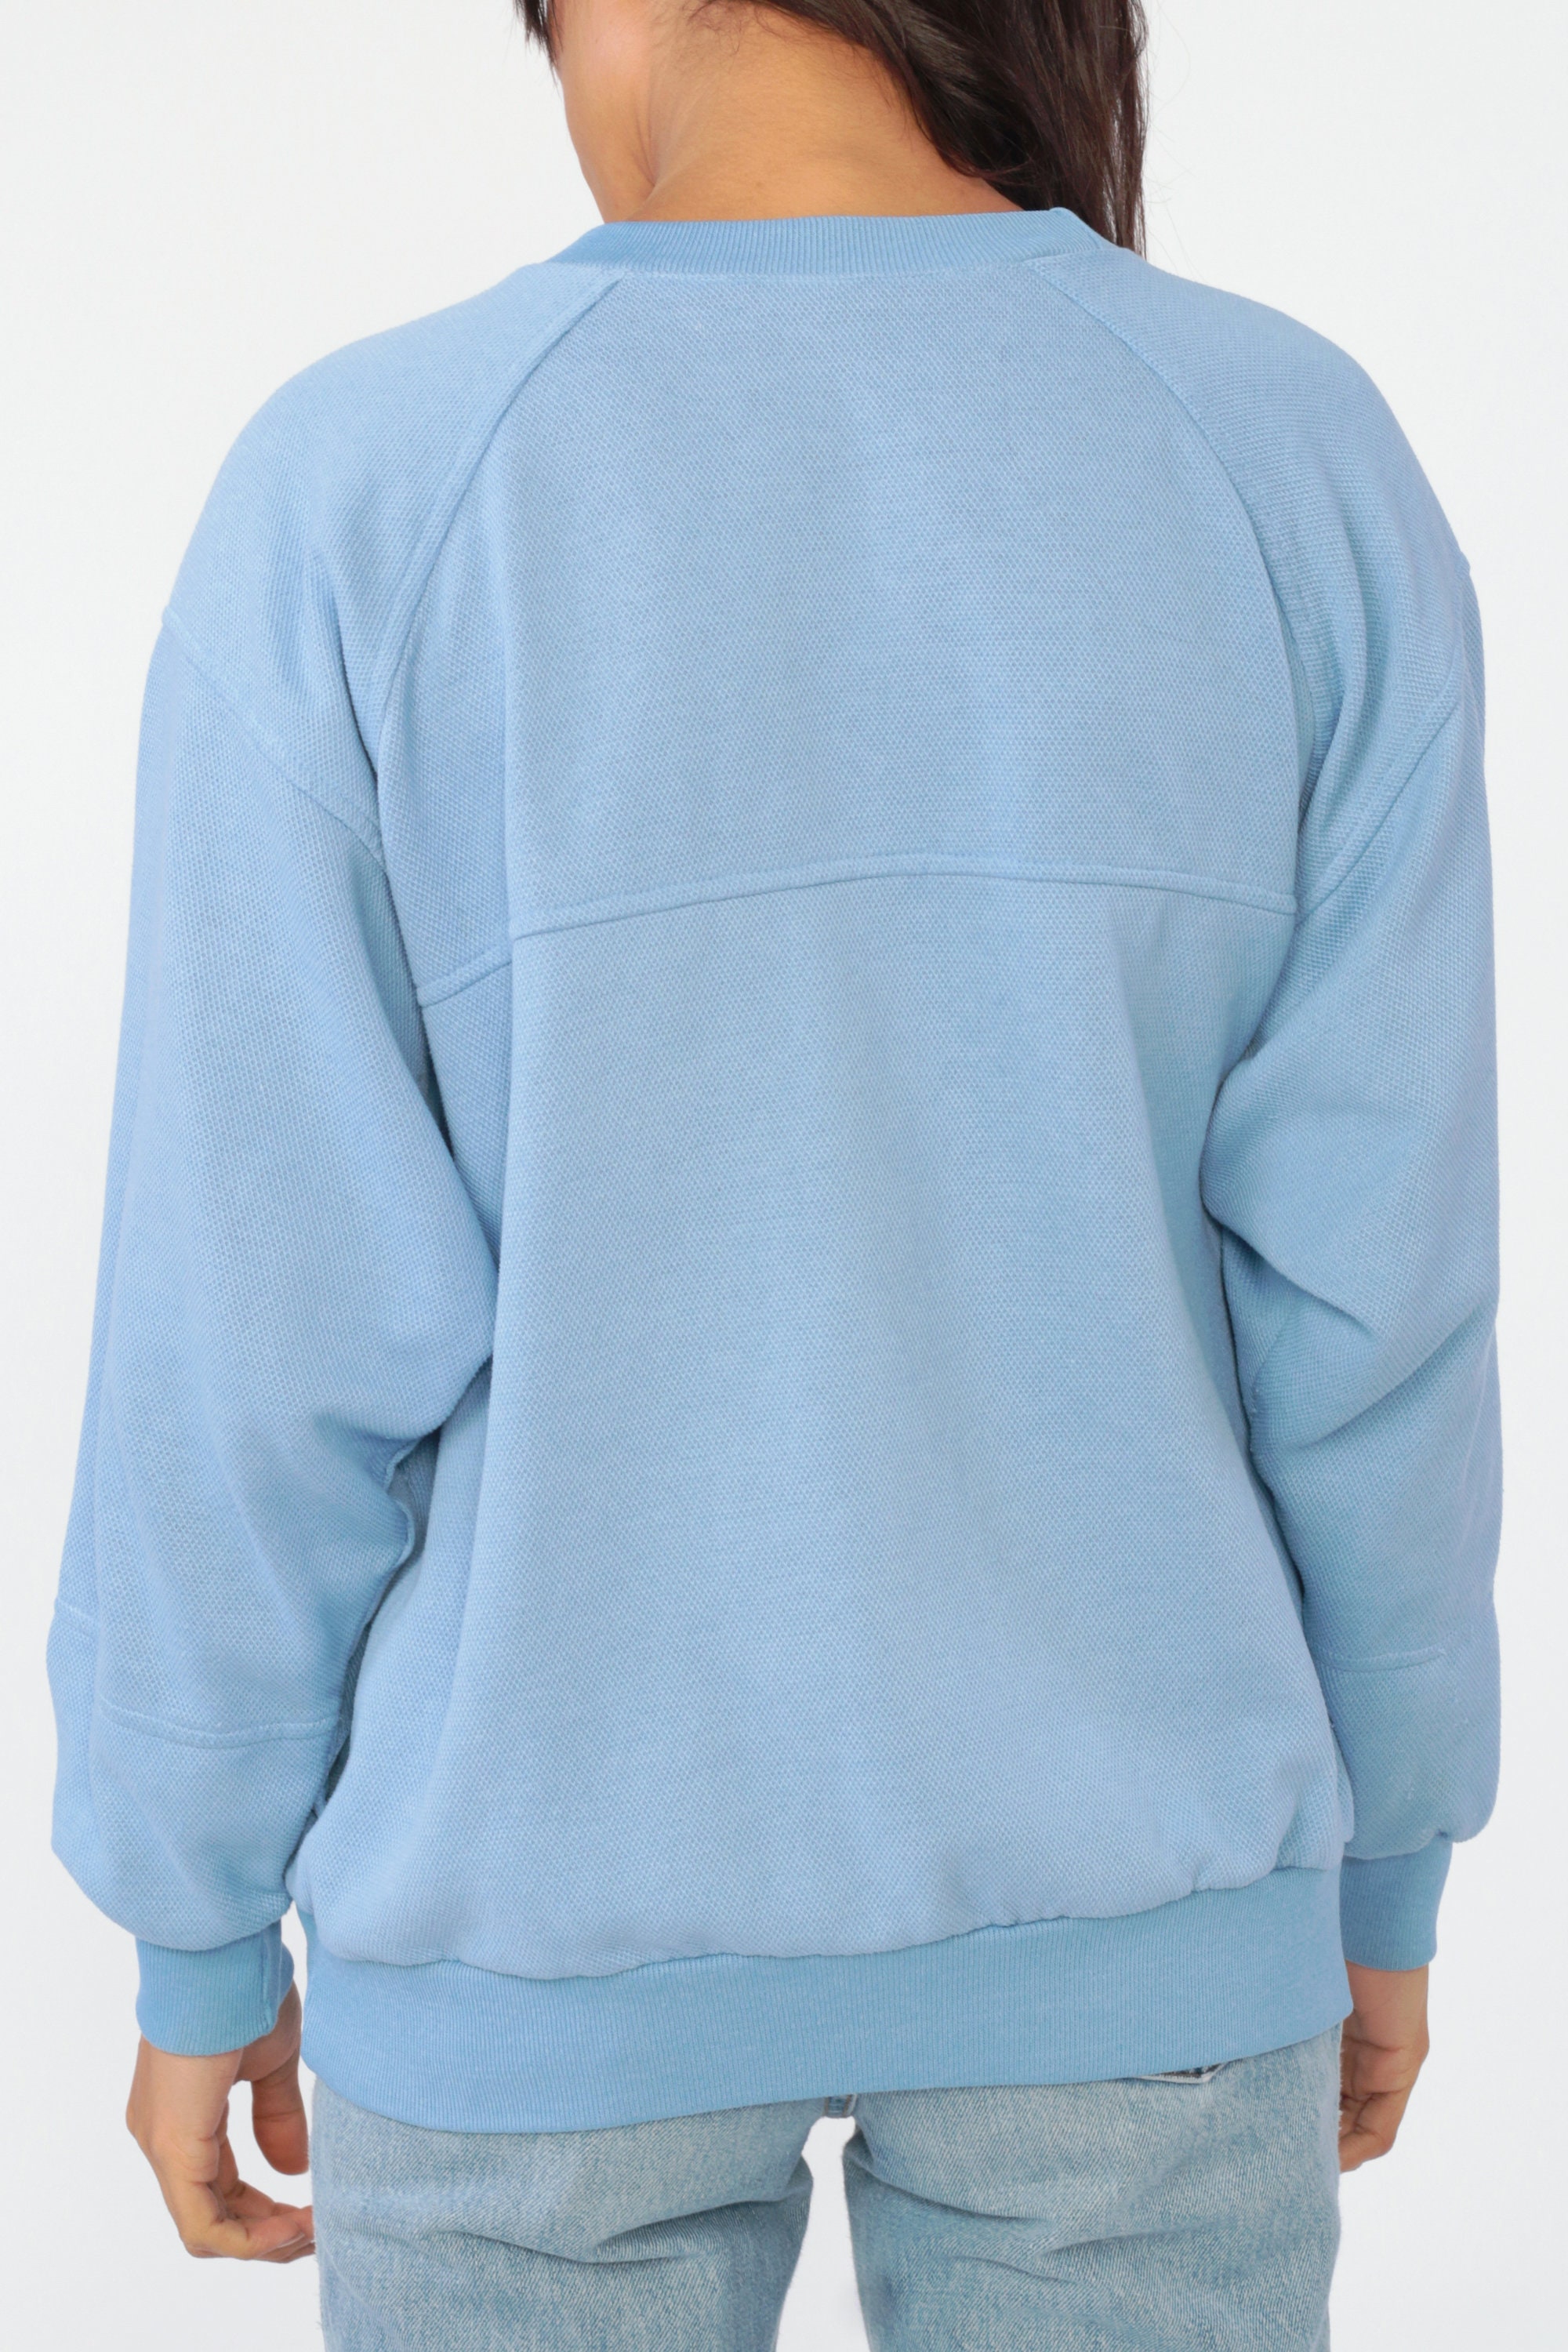 baby blue vintage nike sweatshirt